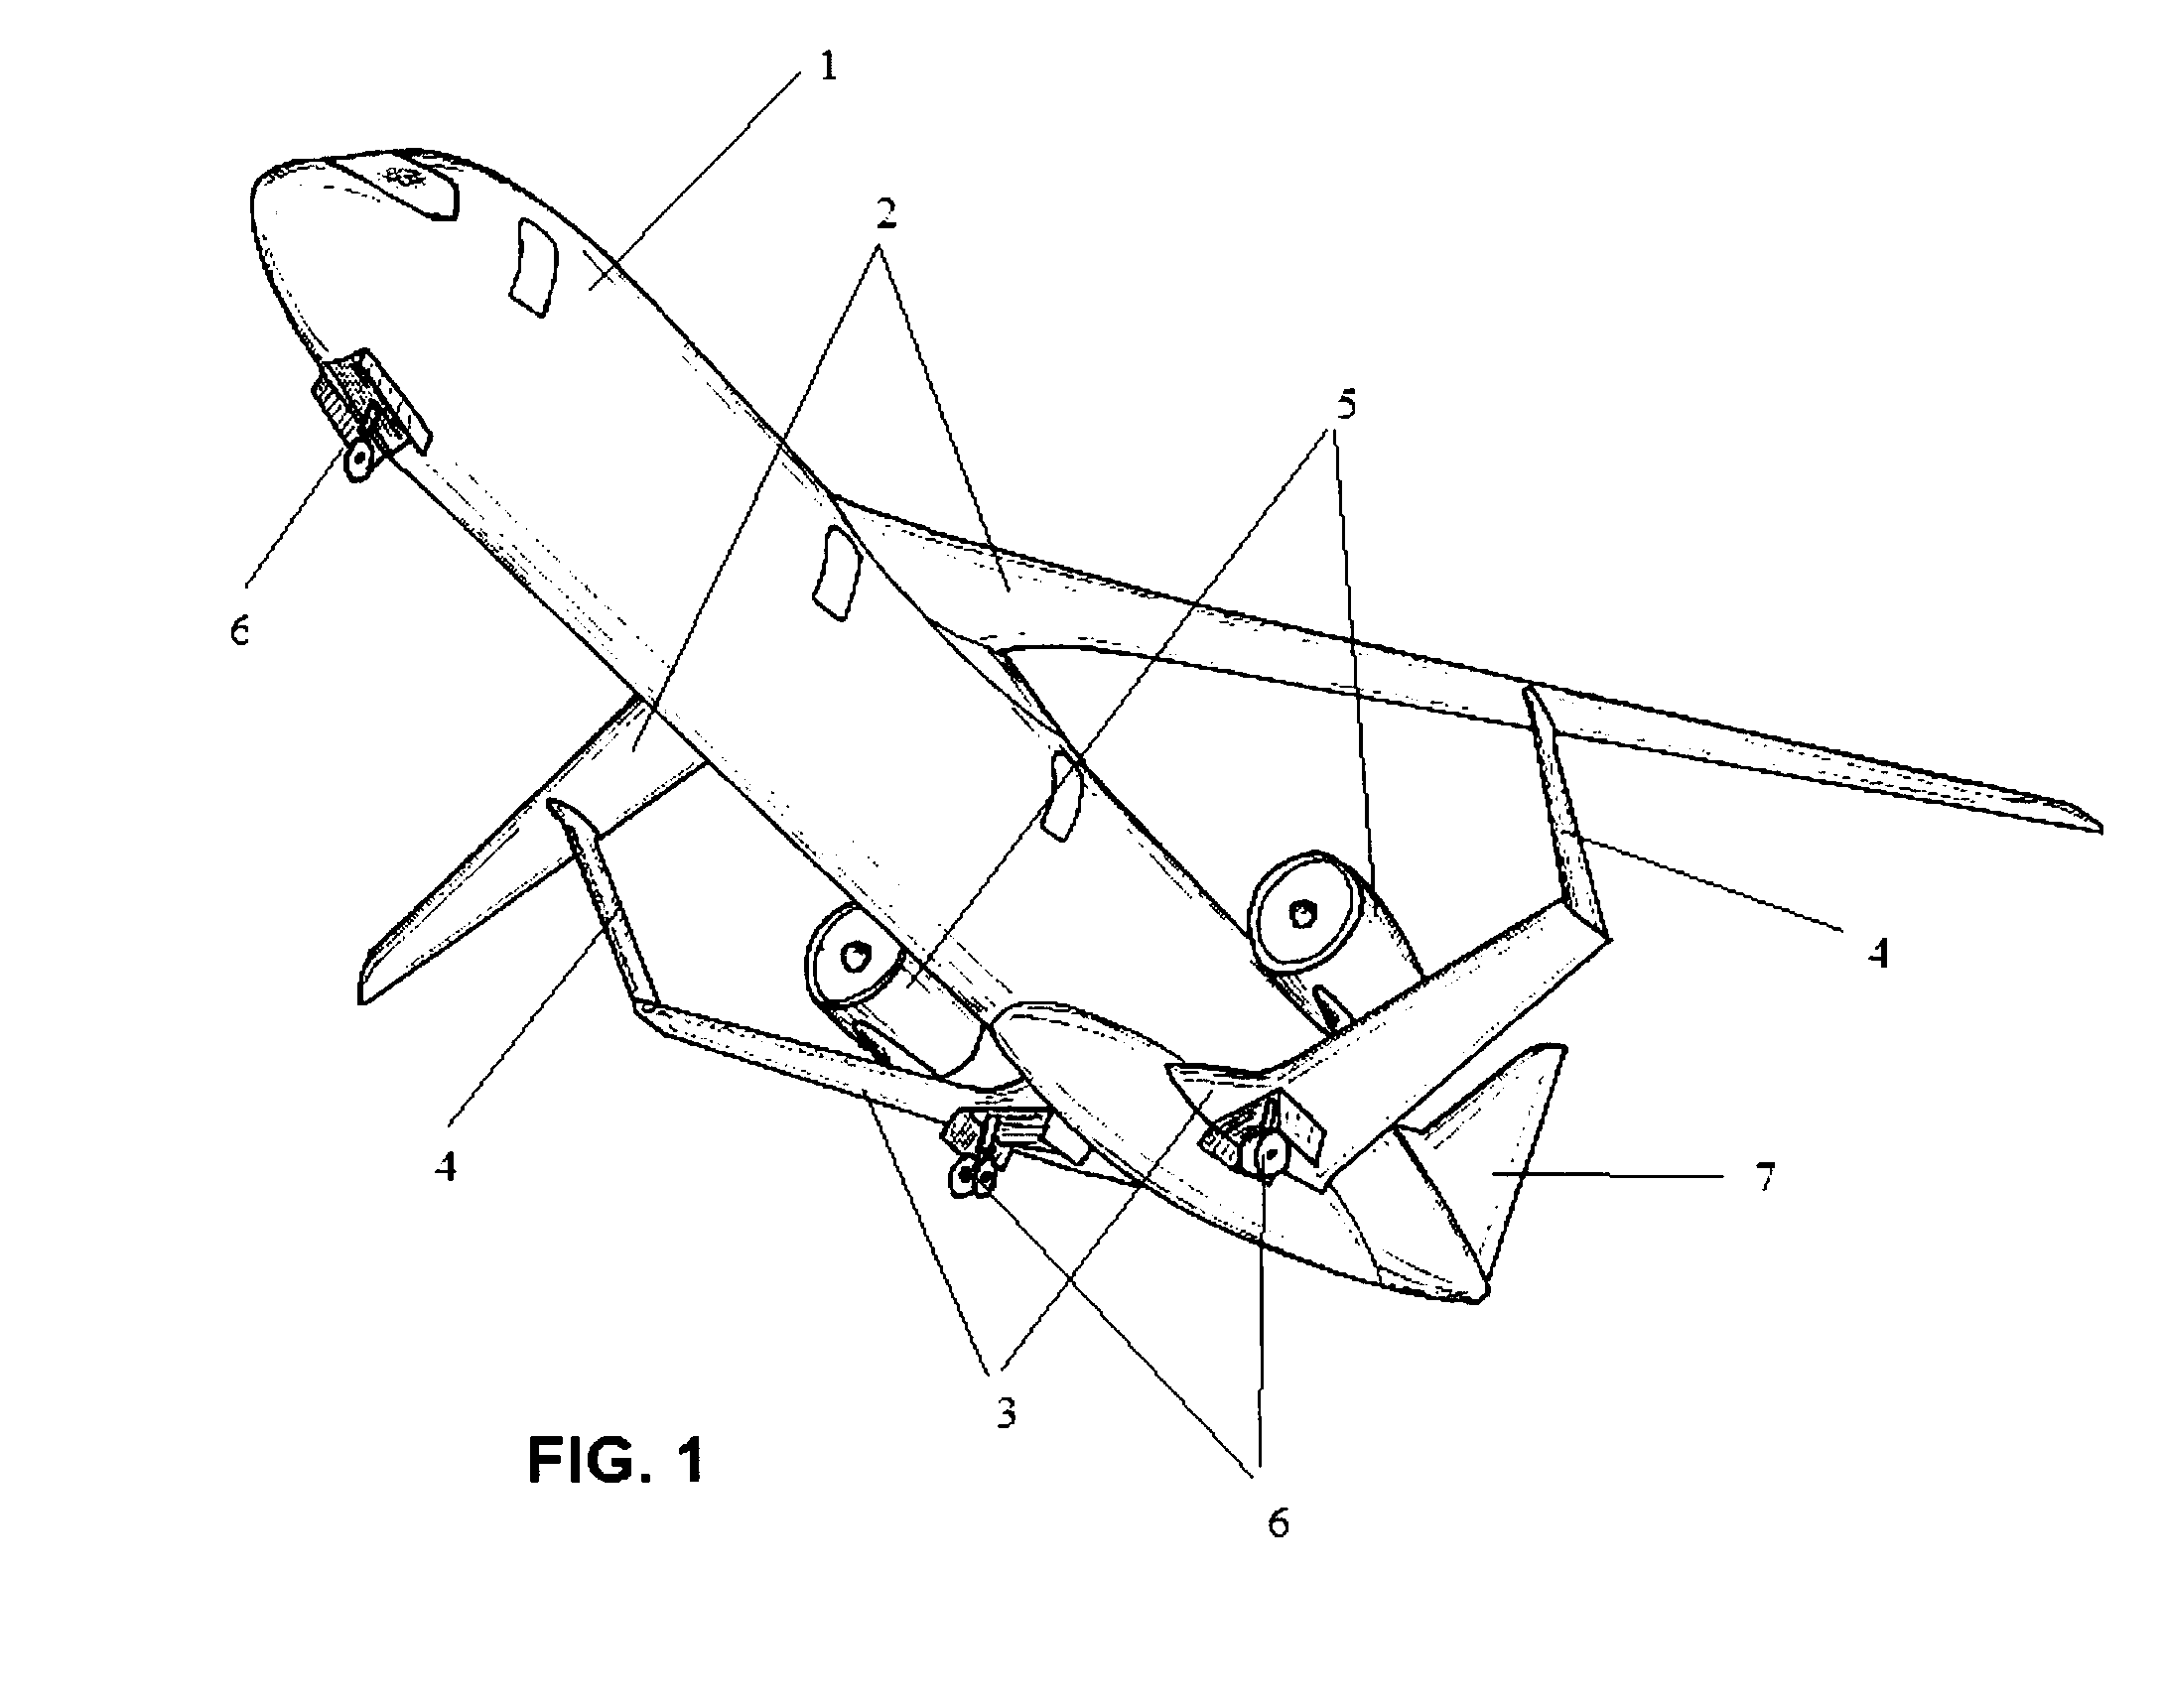 Aircraft having a lambda-box wing configuration